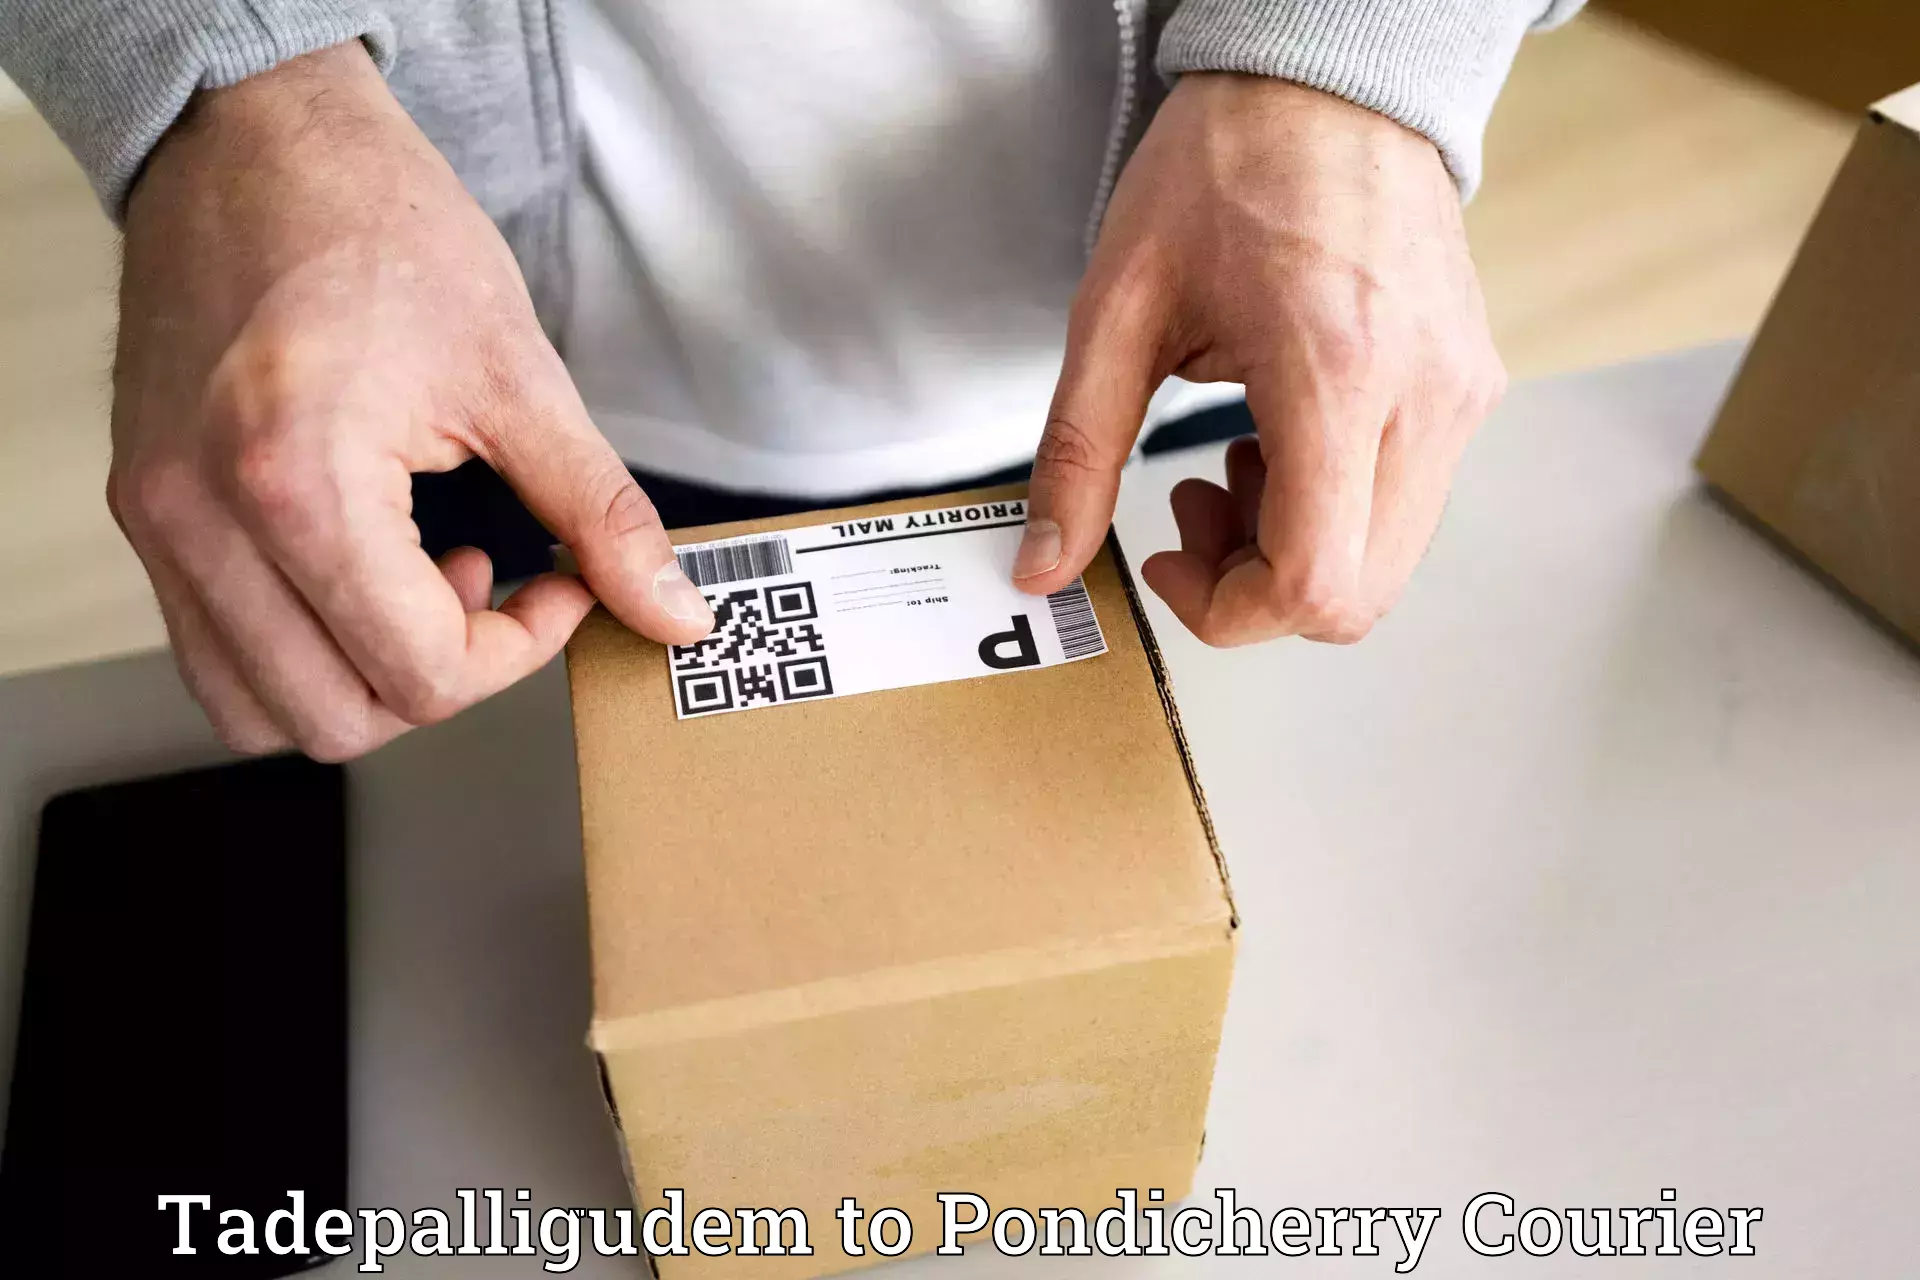 Urban courier service Tadepalligudem to Pondicherry